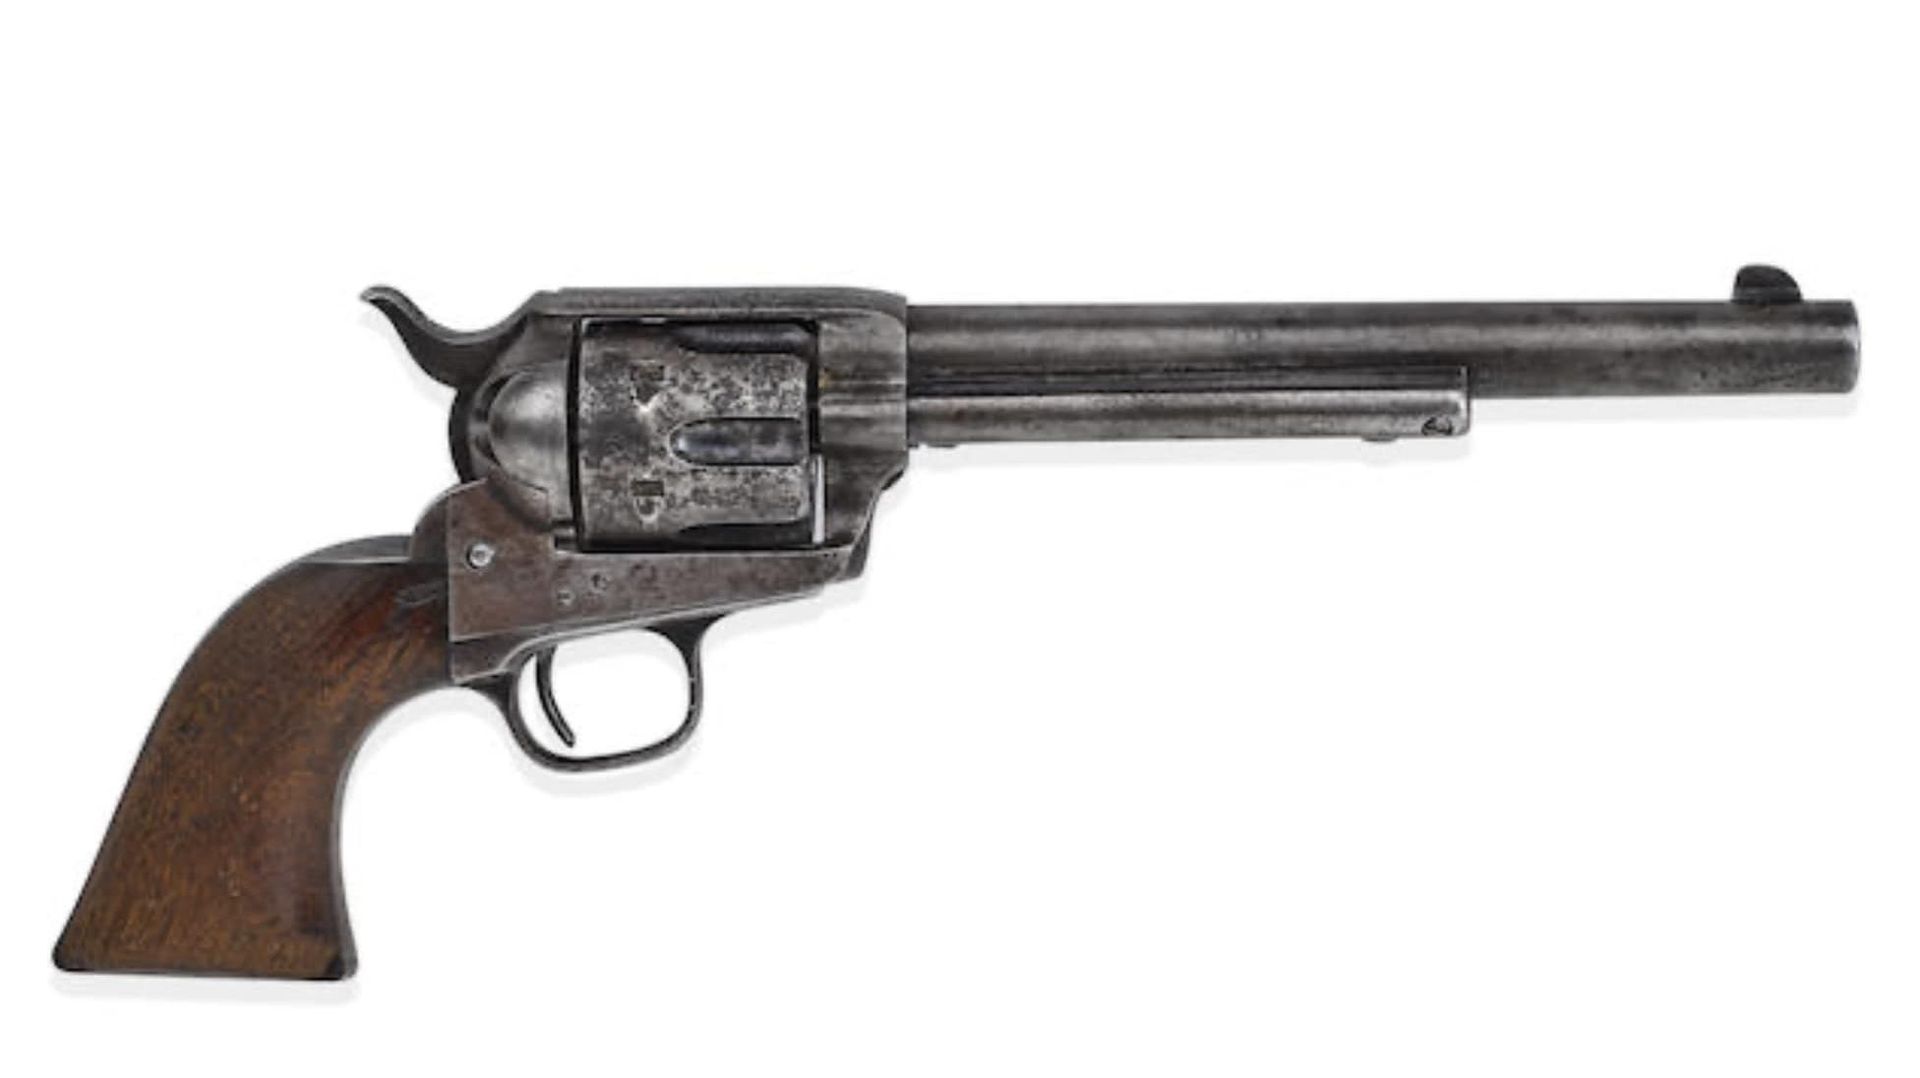 Avant la vente de vendredi, le record du prix de vente d’une arme à feu était de 1,98 million de dollars pour une paire de pistolets du XVIIIe siècle.